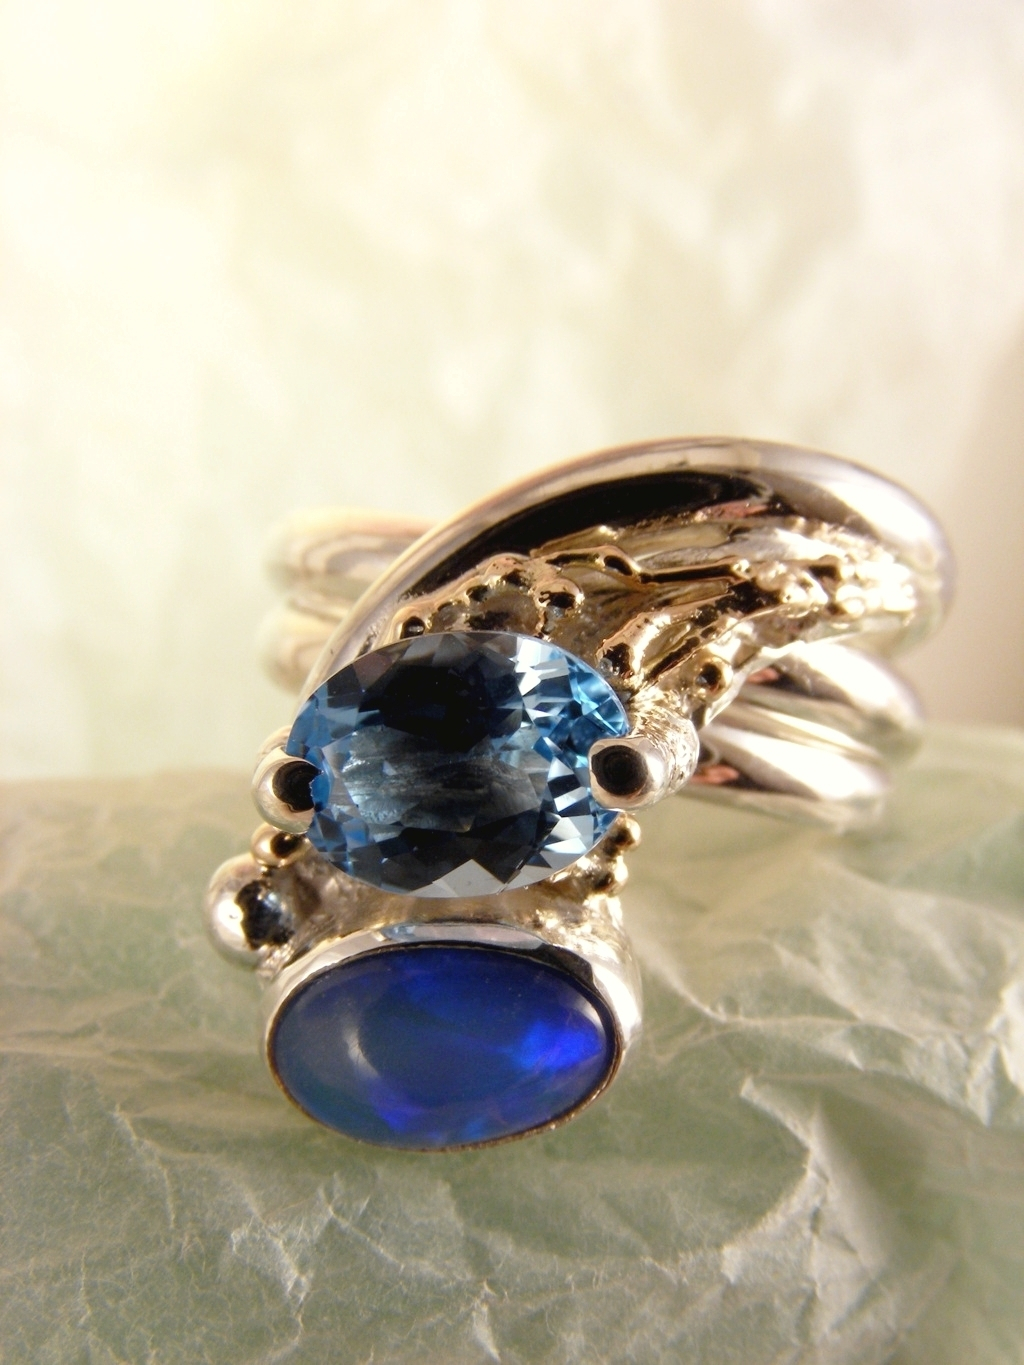 Gregory Pyra Piro handgefertigter Ring 2015, Gregory Pyra Piro Ring mit einstellbarer Größe, einzigartiger Designring aus Gold und Silber, einzigartiger Designgoldschmied mit gemischten Metallen, einzigartiger Designring mit blauem Topas und Opal, einzigartiger Designschmuck, der in Kunstgalerien gezeigt wird